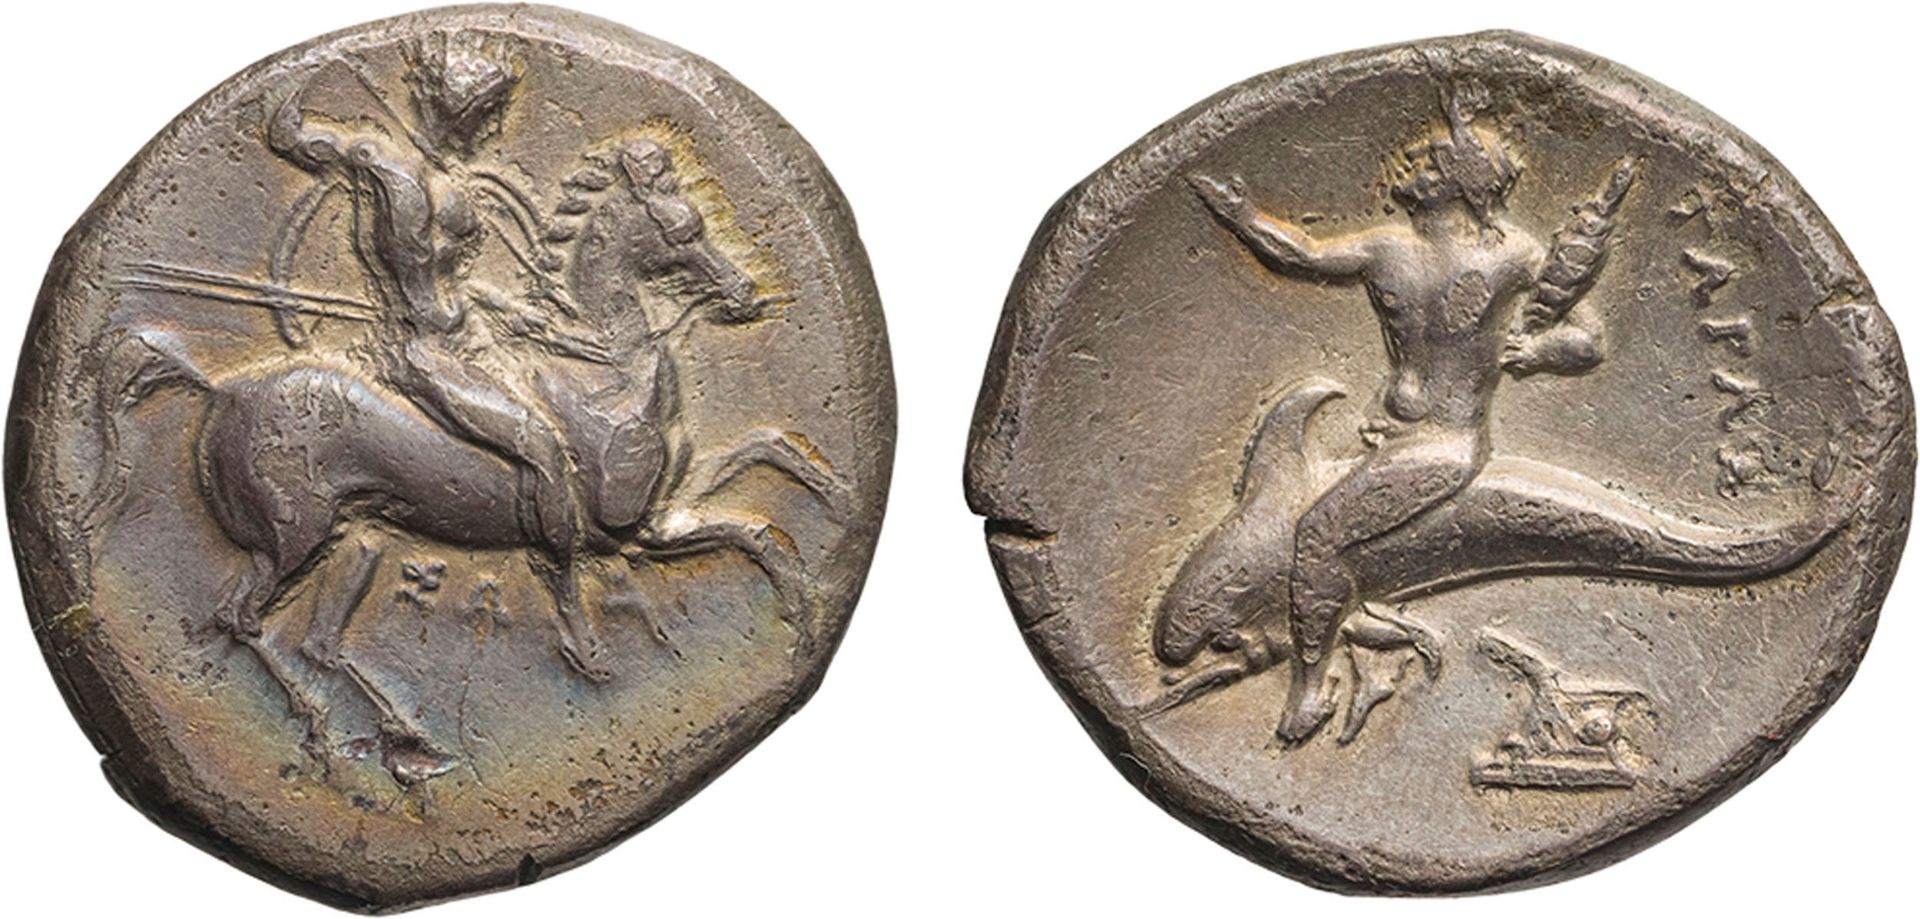 MONETE GRECHE. CALABRIA. TARANTO (CIRCA 280-291 A.C.). NOMOS